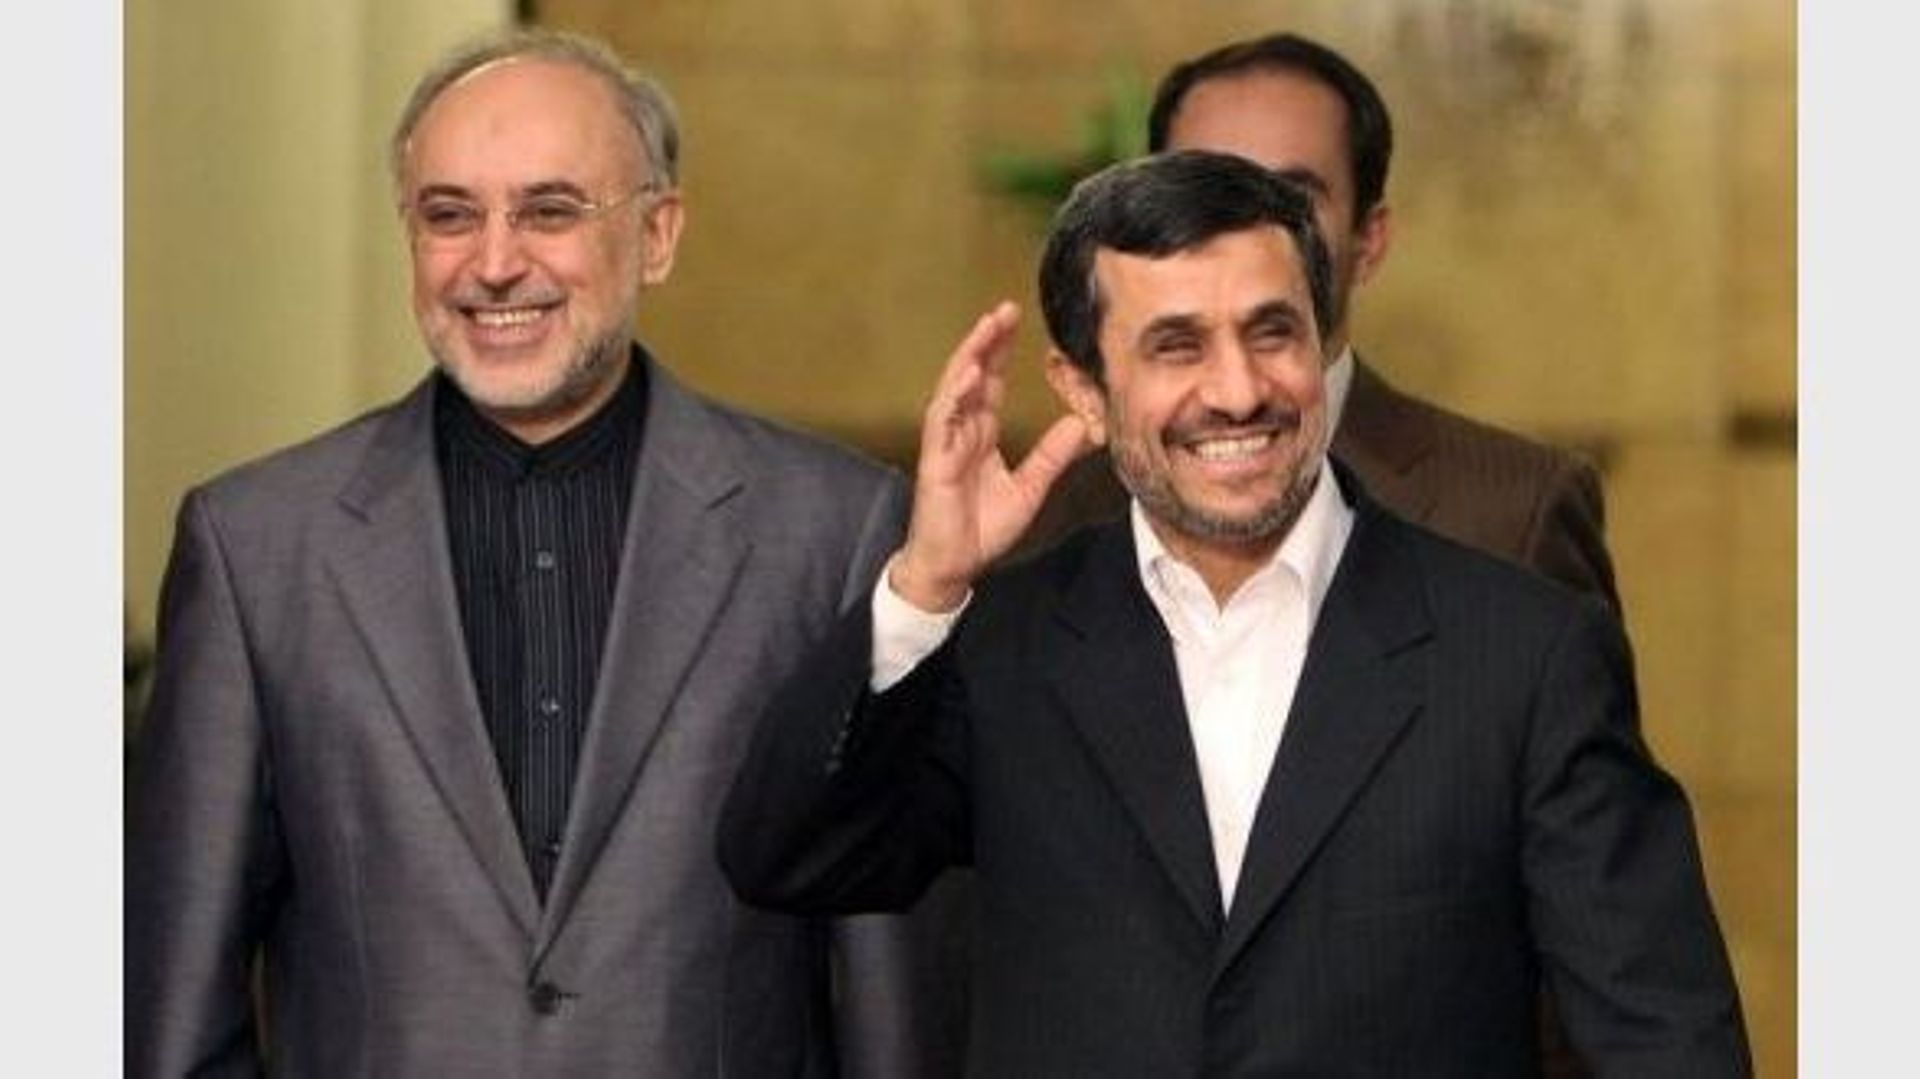 Le président iranien Mahmoud Ahmadinejad (D) et son ministre des Affaires étrangères, Ali Akbar Salehi, le 5 janvier 2012 à Téhéran